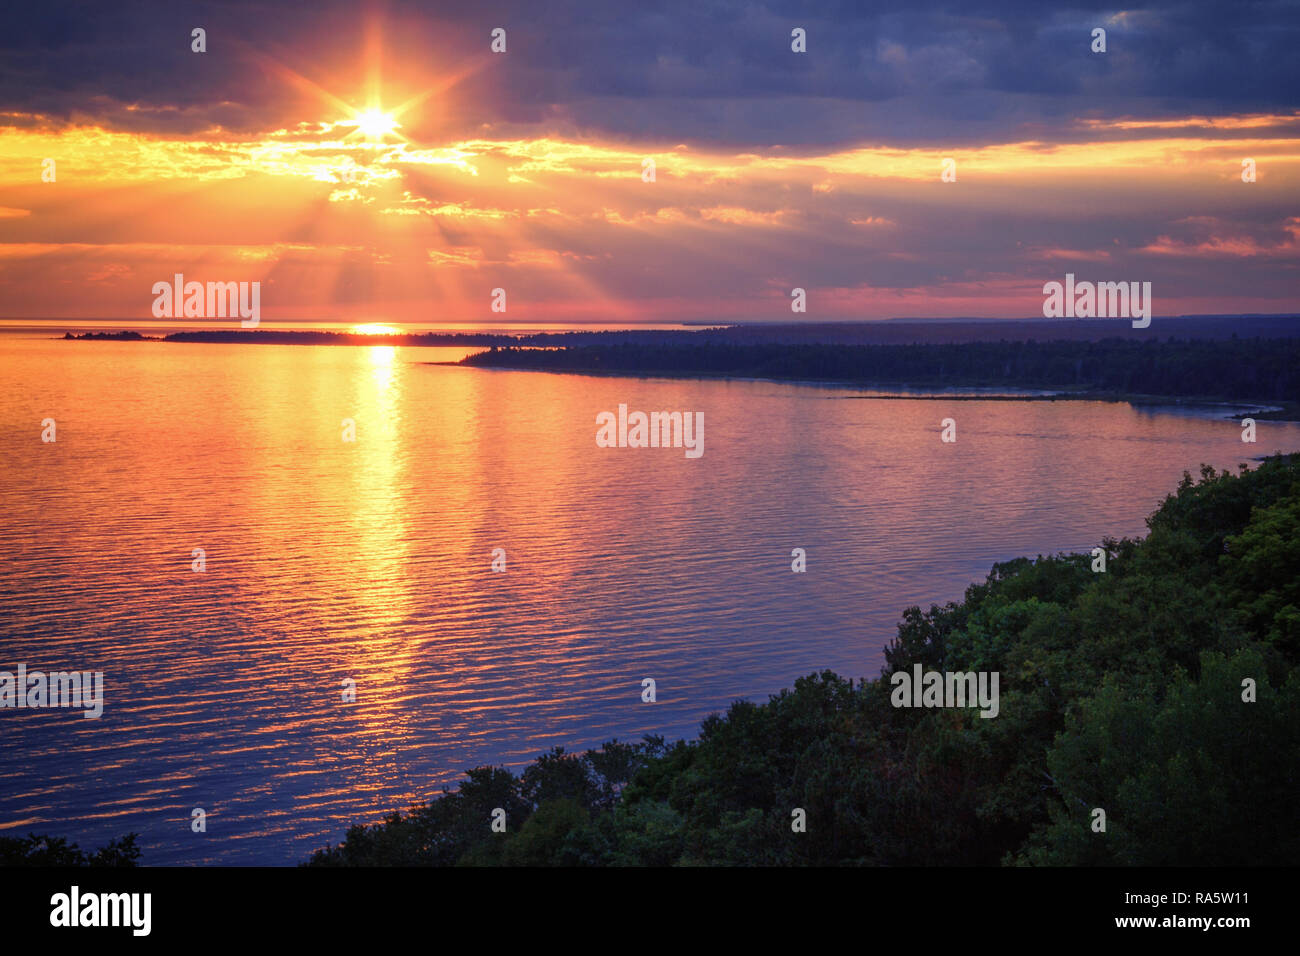 Le littoral du lac Michigan au coucher du soleil. Une vue panoramique de la route du Pont de la rivière parc surplombant la baie Epoufette dans la Péninsule Supérieure du Michigan. Banque D'Images